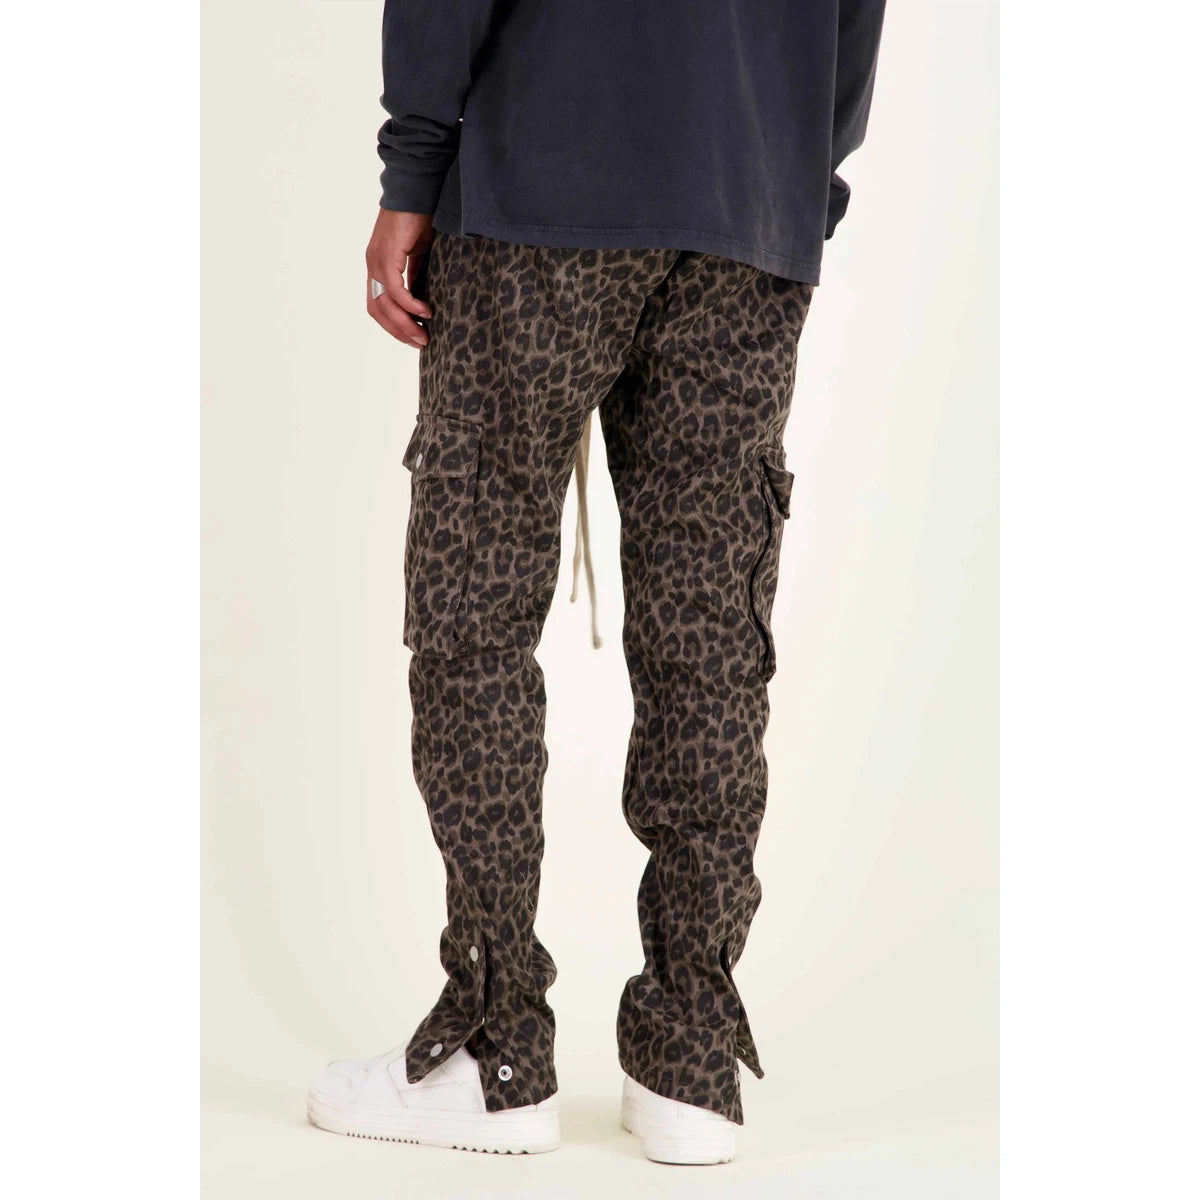 Mouty Leopard Cargo Pants